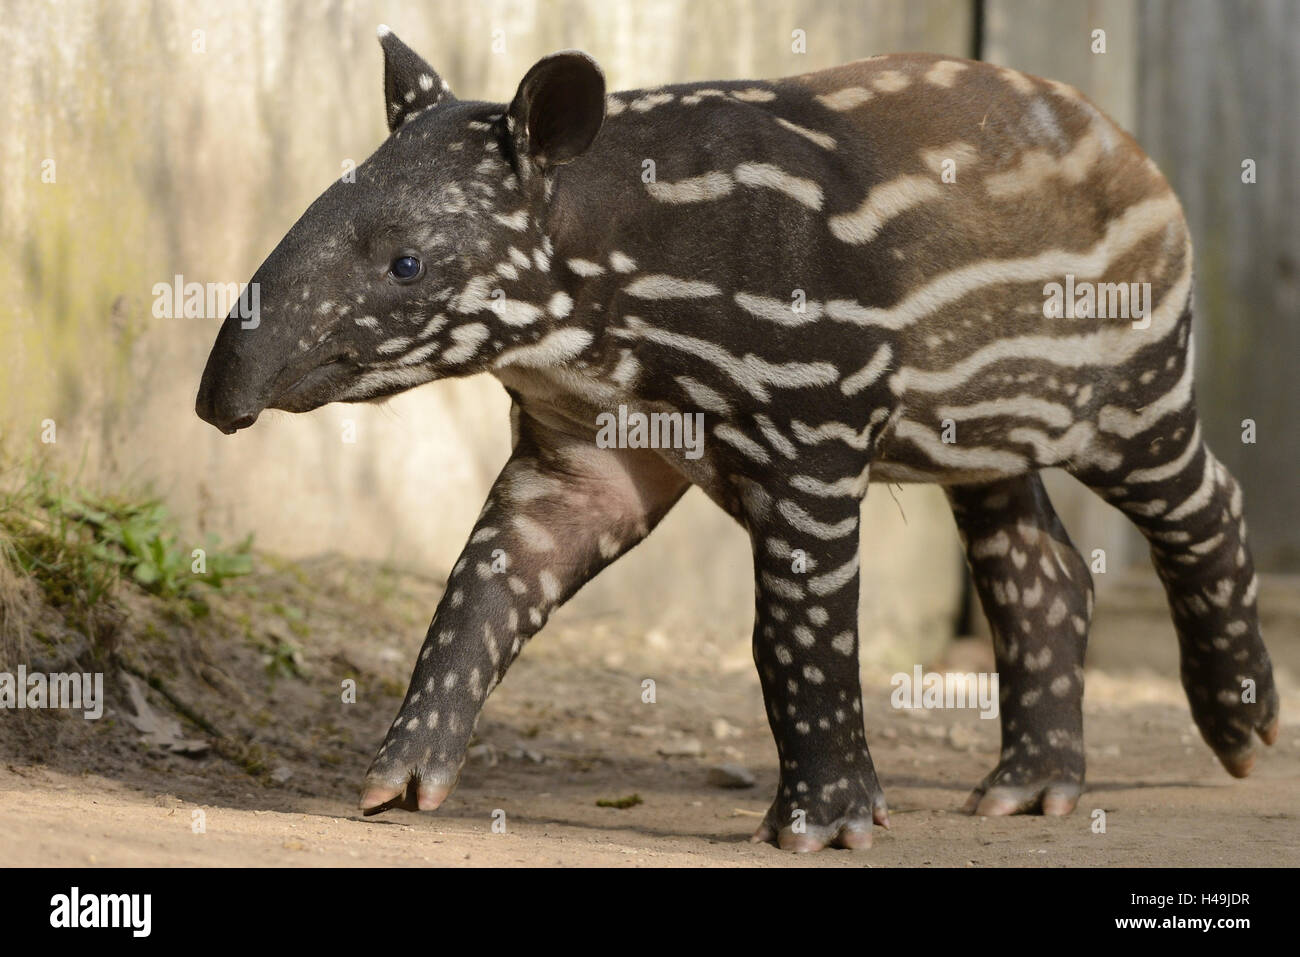 Malayan tapir, Tapirus indicus, young animal, Stock Photo